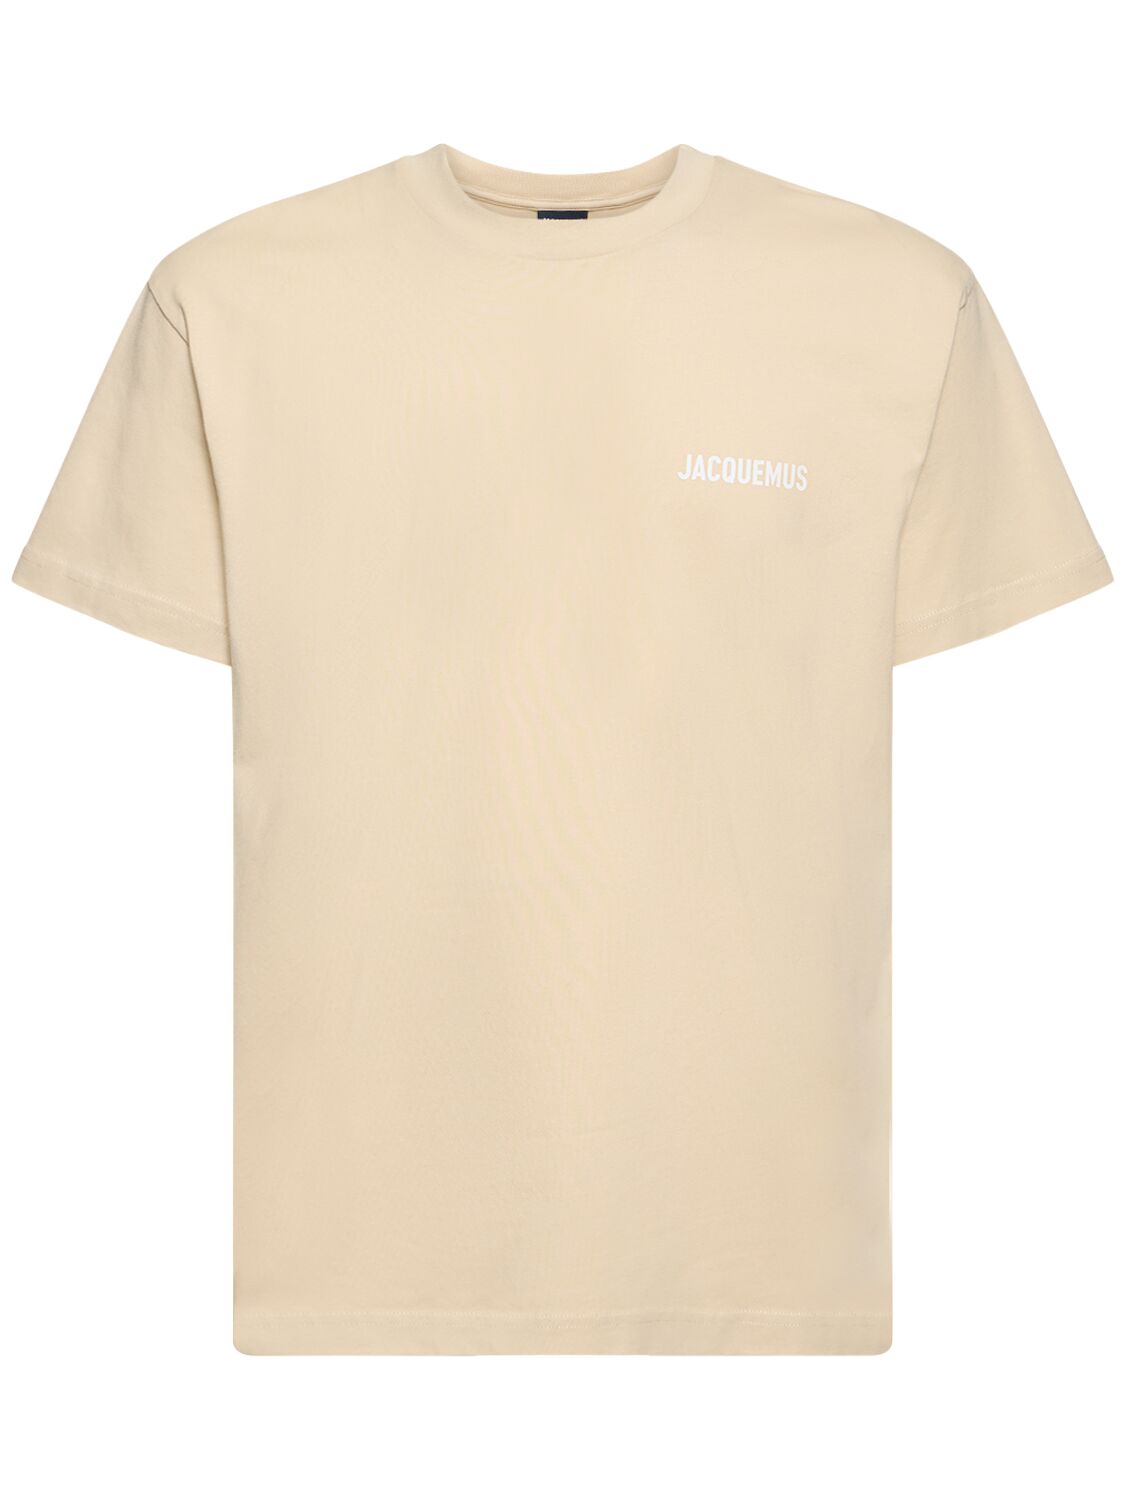 Jacquemus Le Tshirt Logo Cotton T-shirt In Light Beige